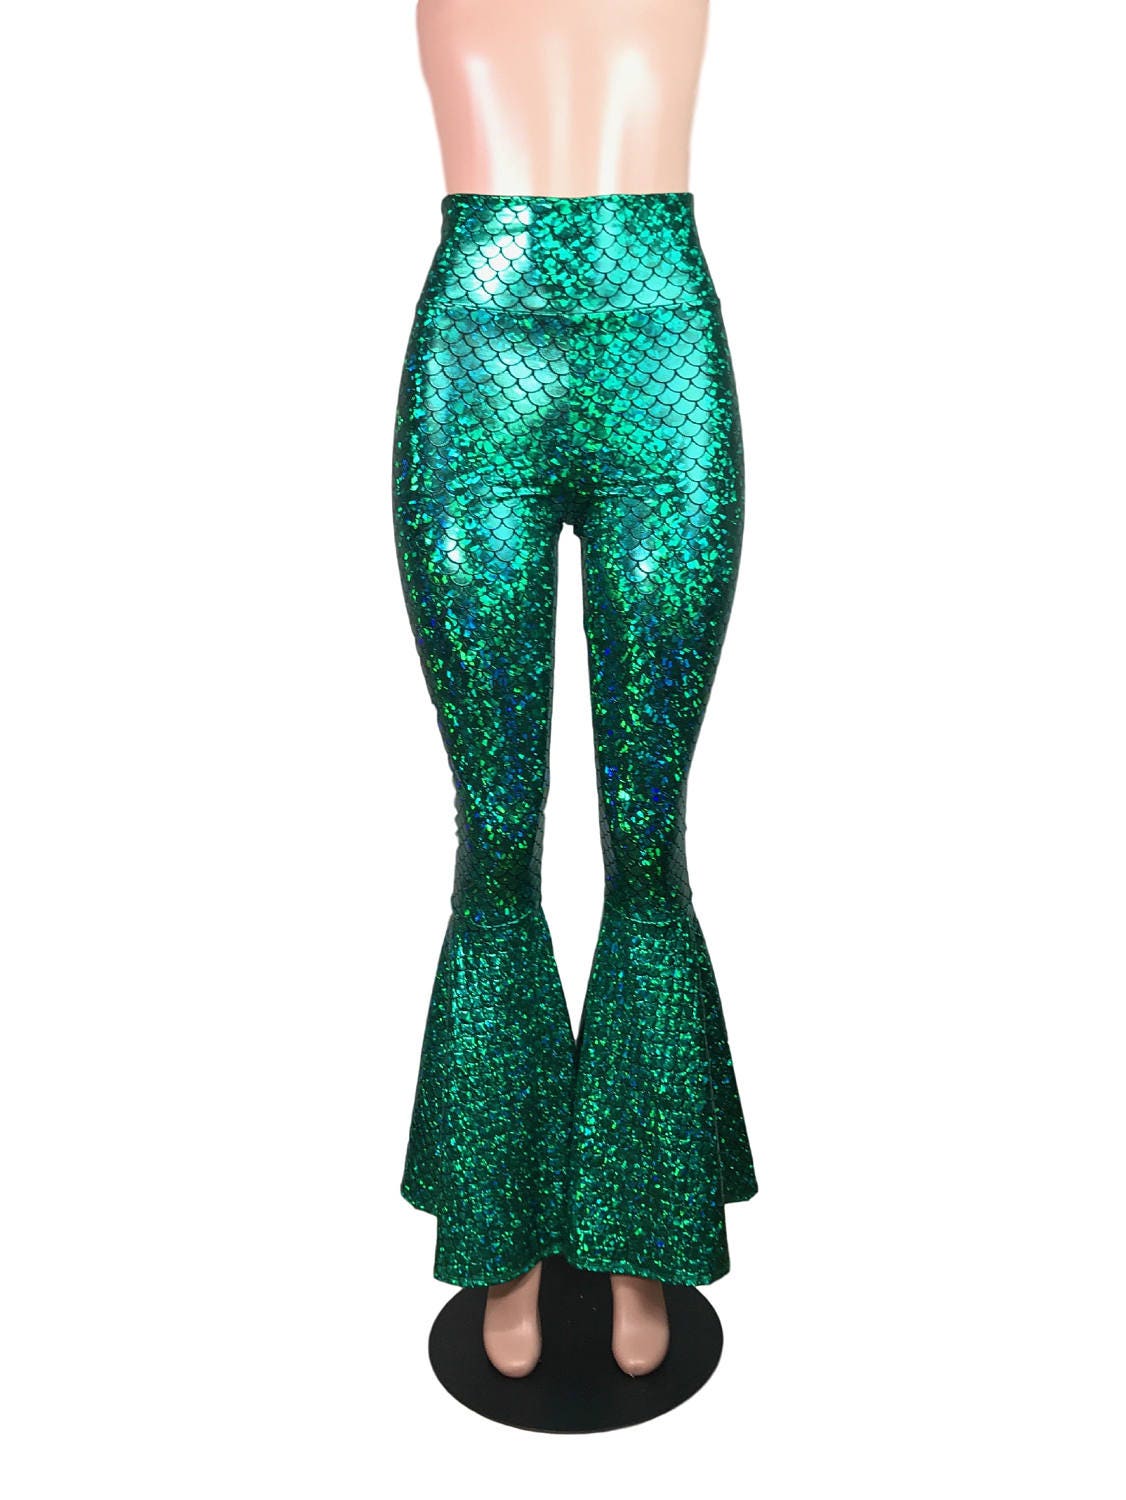 Women's Festival Pants, Burning Man Leggings, Green Blue Sequin